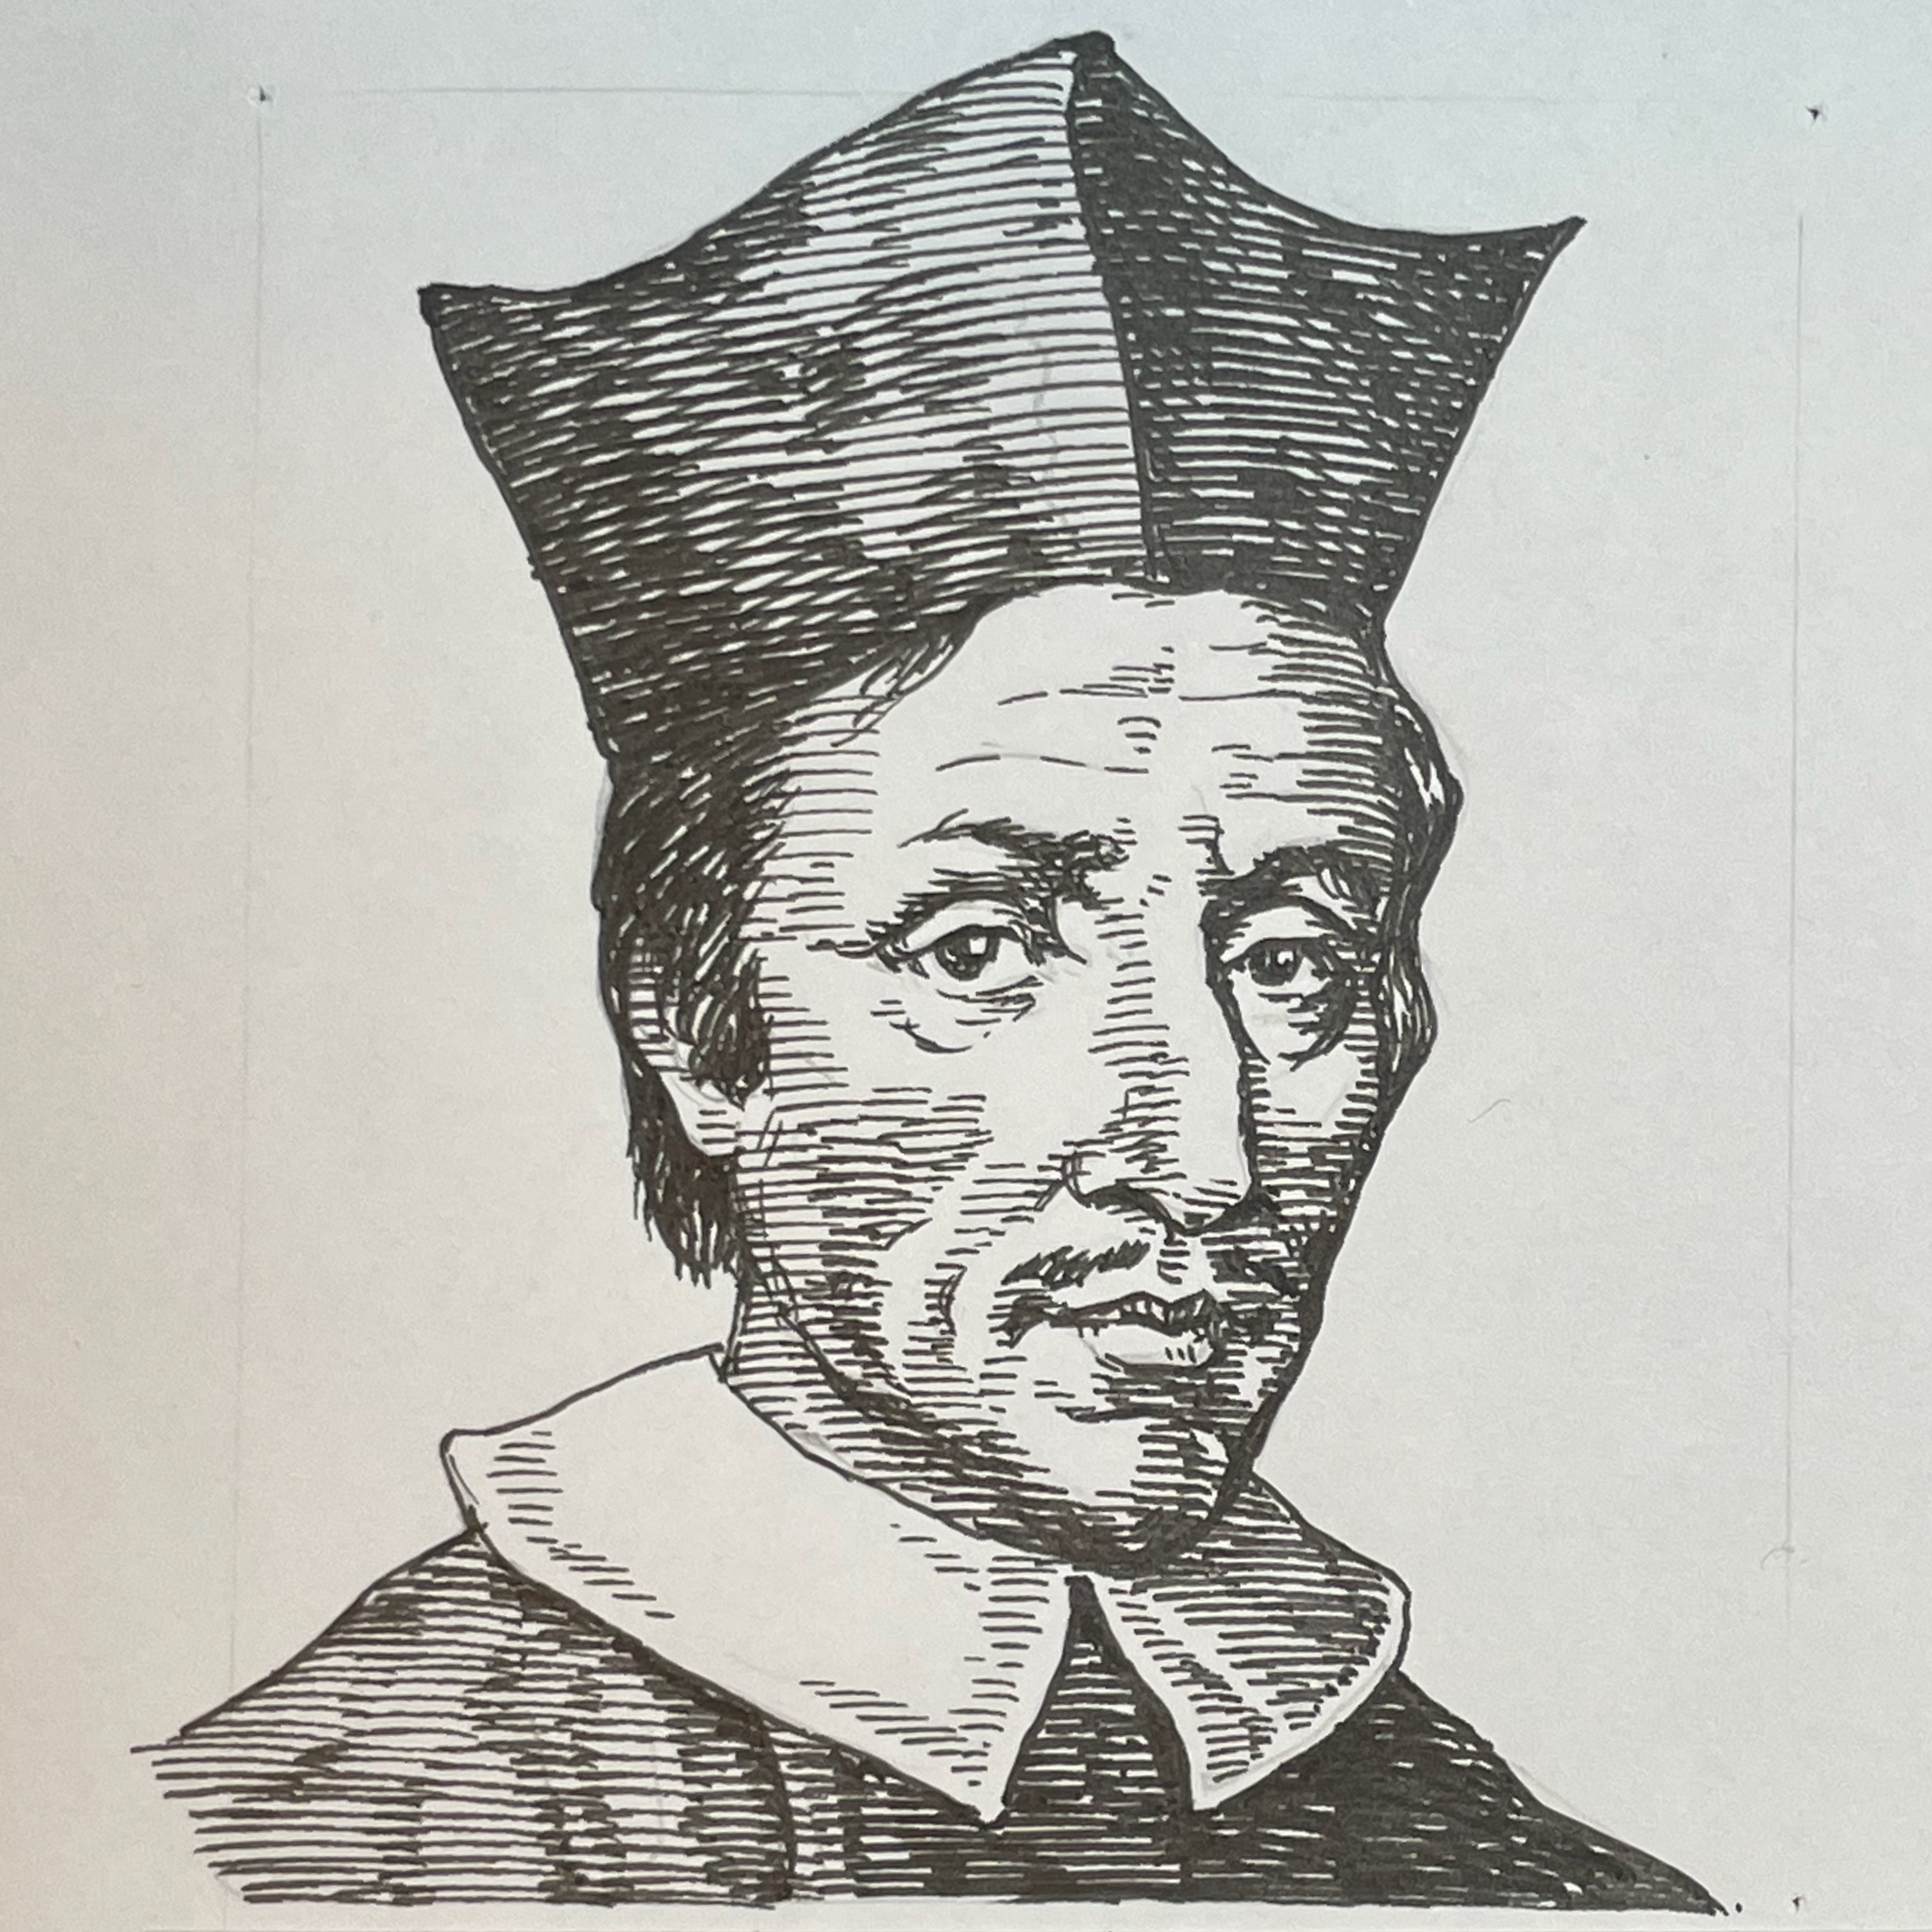 1638-1686を生きた解剖学者、博物学者でありカトリック司教。コペンハーゲン大学で医学教育を受けた後、ライデン大学で学位を取得。解剖学分野に長け、耳下腺から口腔に唾液を運ぶ管を発見し、この耳下腺管はステノン管と呼ばれている。その後イタリアフィレンツェにて博物学(地質学)研究でその才能を発揮した。その後、ルターの宗教改革を受けカトリックに改宗、神学を学びドイツのカトリック信仰に努めた。